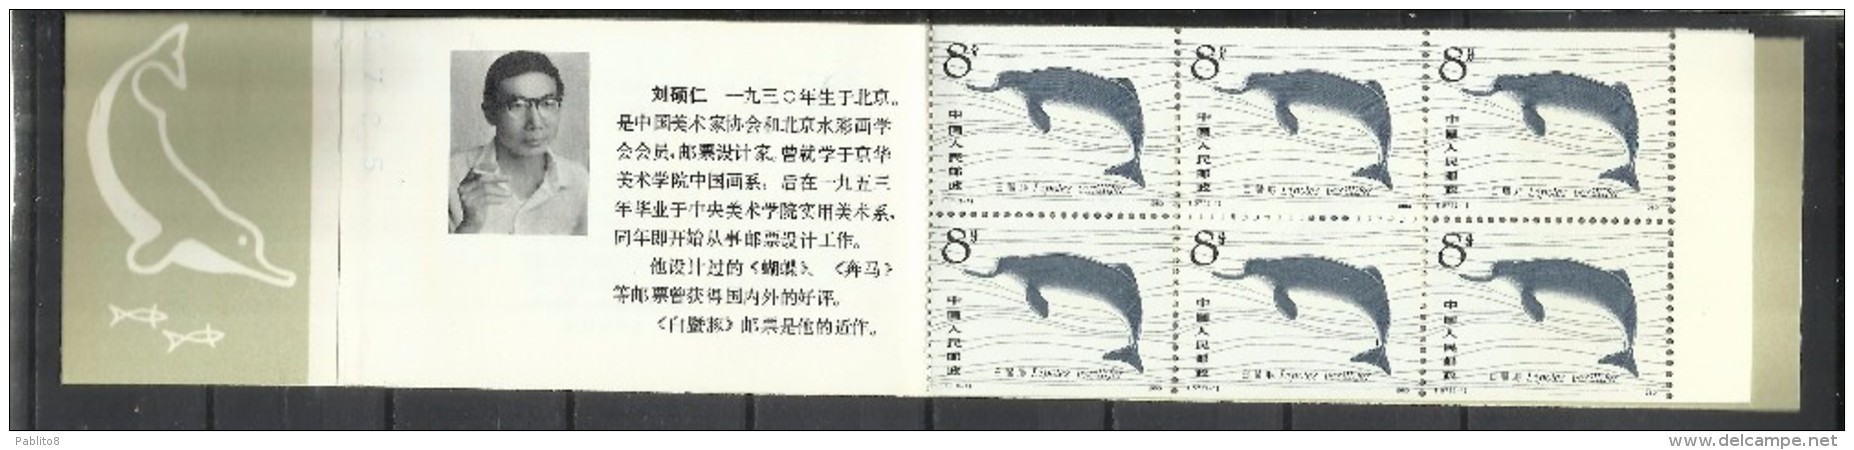 CHINA CINA 1980 SEA FAUNA MARINA MAMMALS NATURE DOLPHINS DELFINI BOOKLET LIBRETTO CARNET BLOCCO BLOCK NUOVO UNUSED - Blocchi & Foglietti